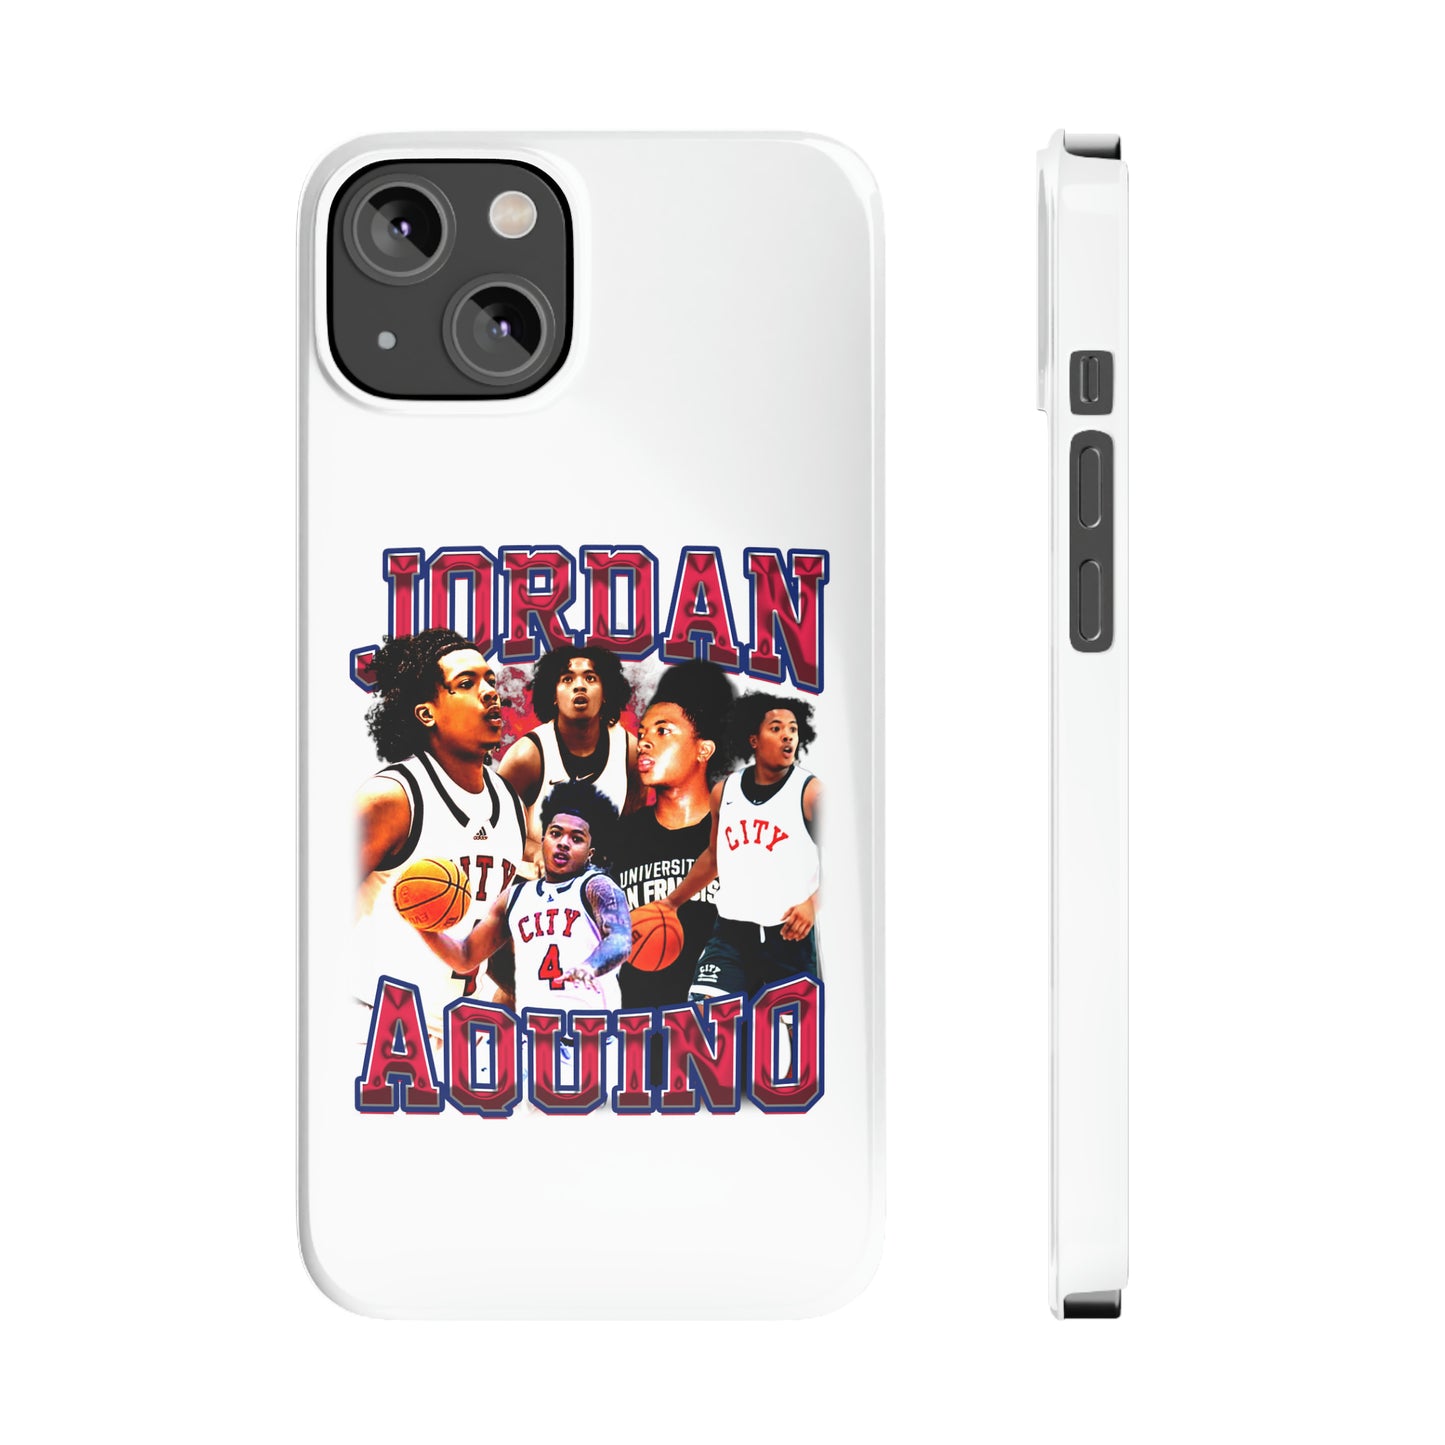 Jordan Aquino Slim Phone Cases